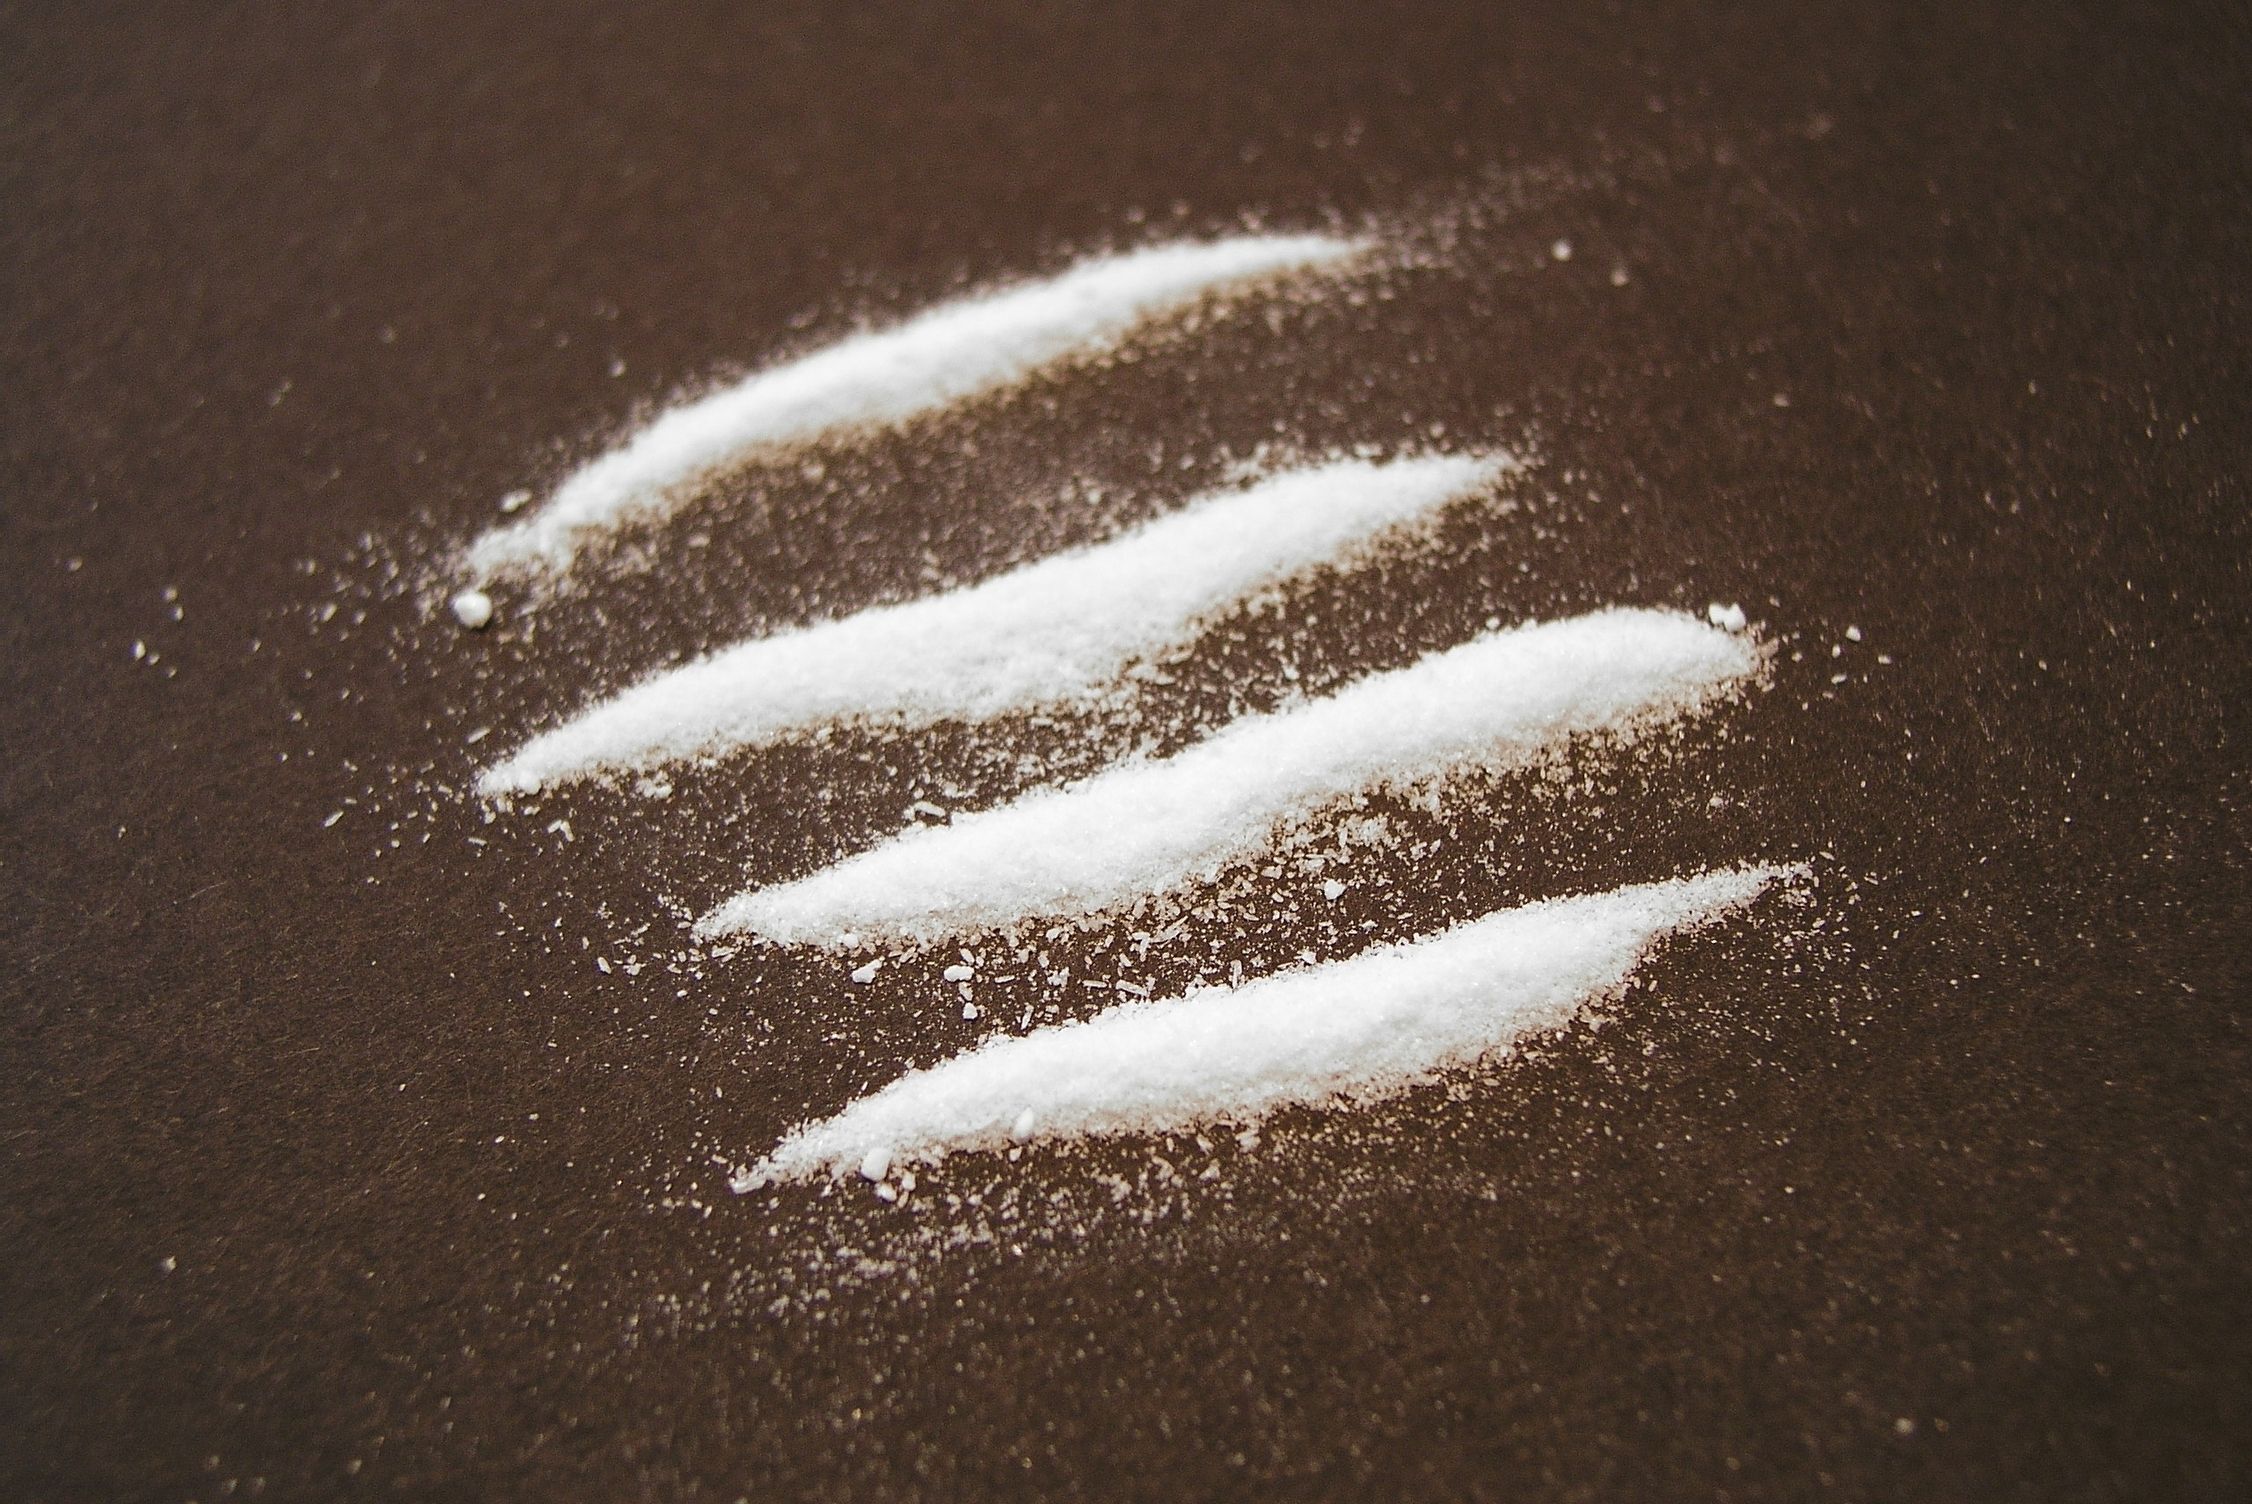 Kokaina hautsa, artxiboko irudian. BERRIA